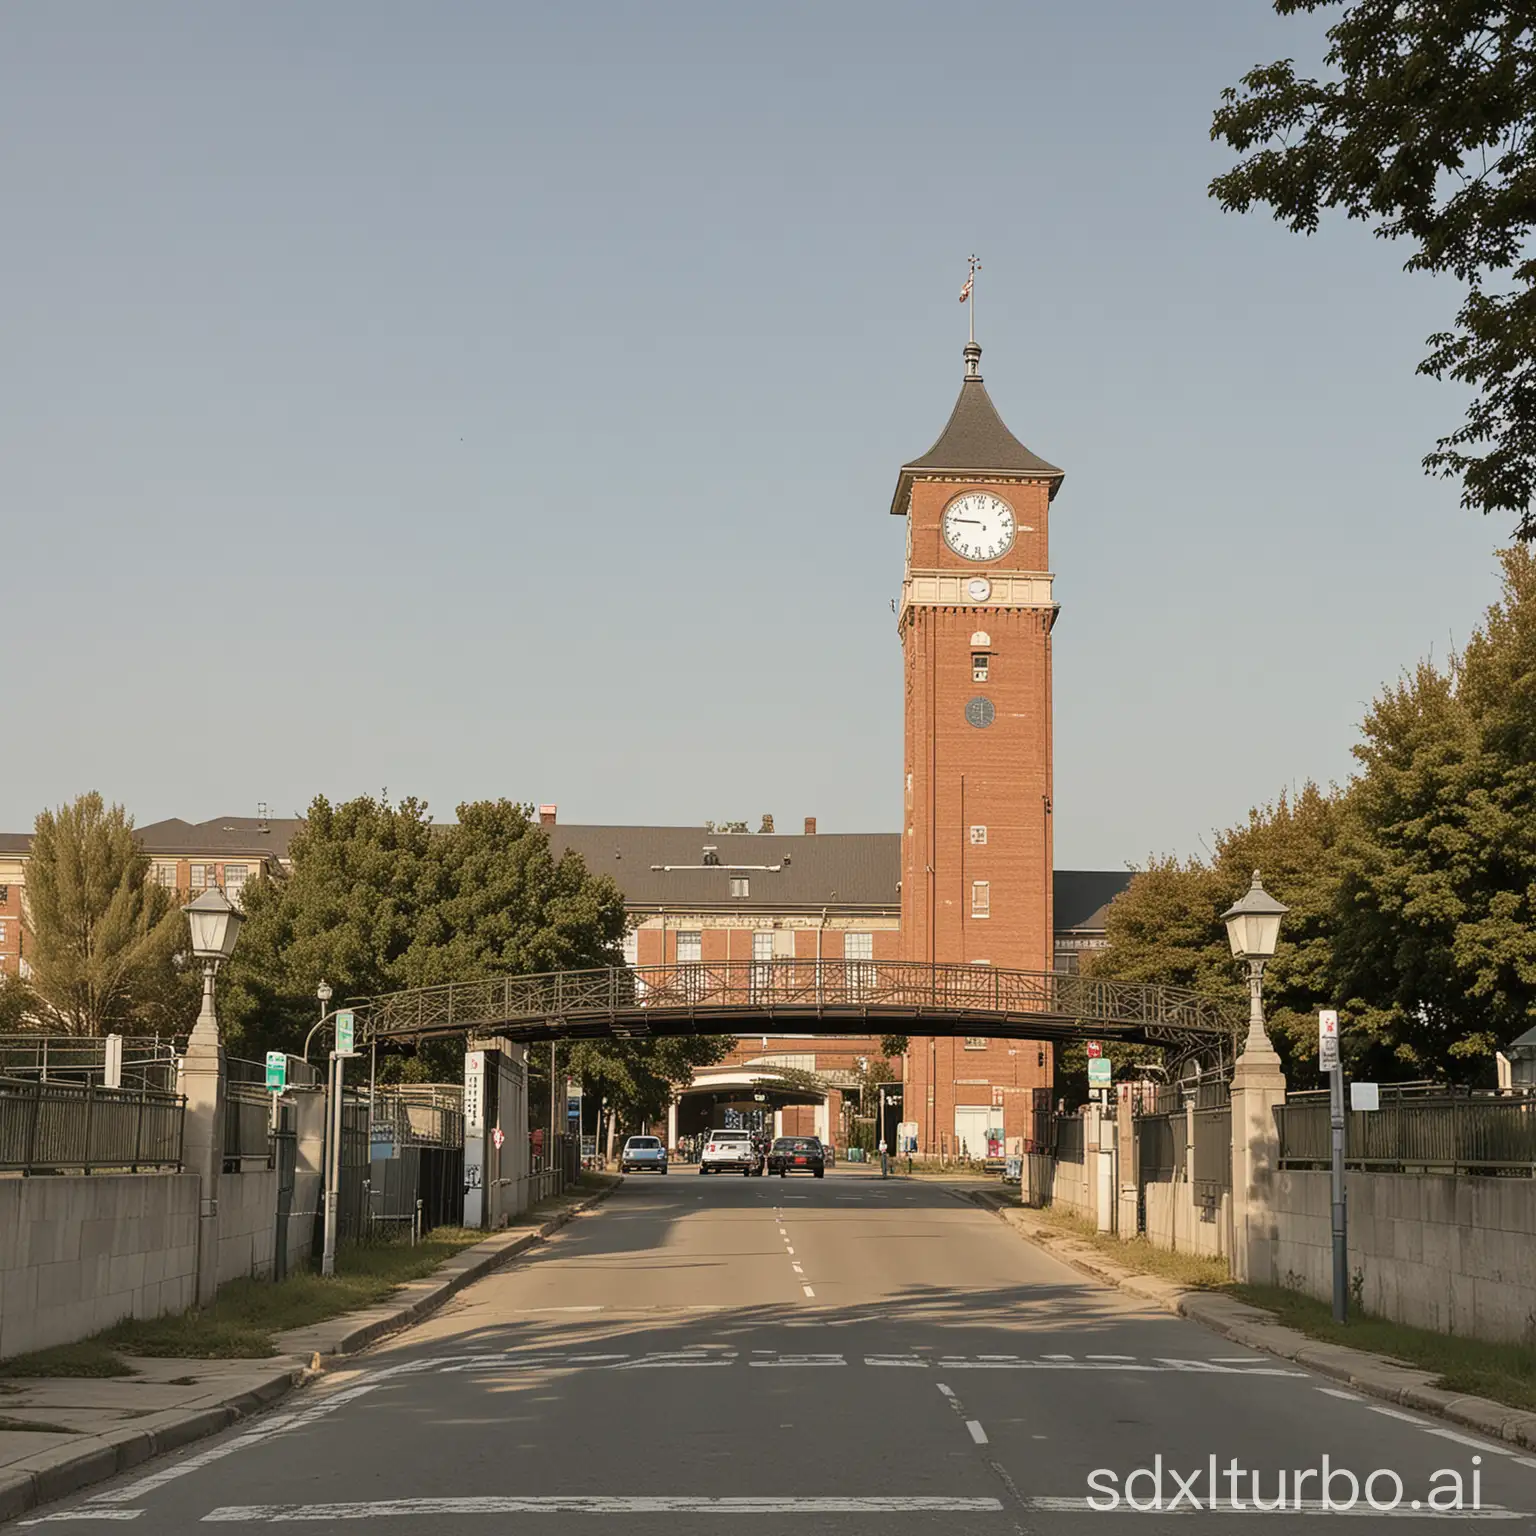 一个大钟楼在校门口，左边是初中部，右边是小学部，中间有桥梁连接